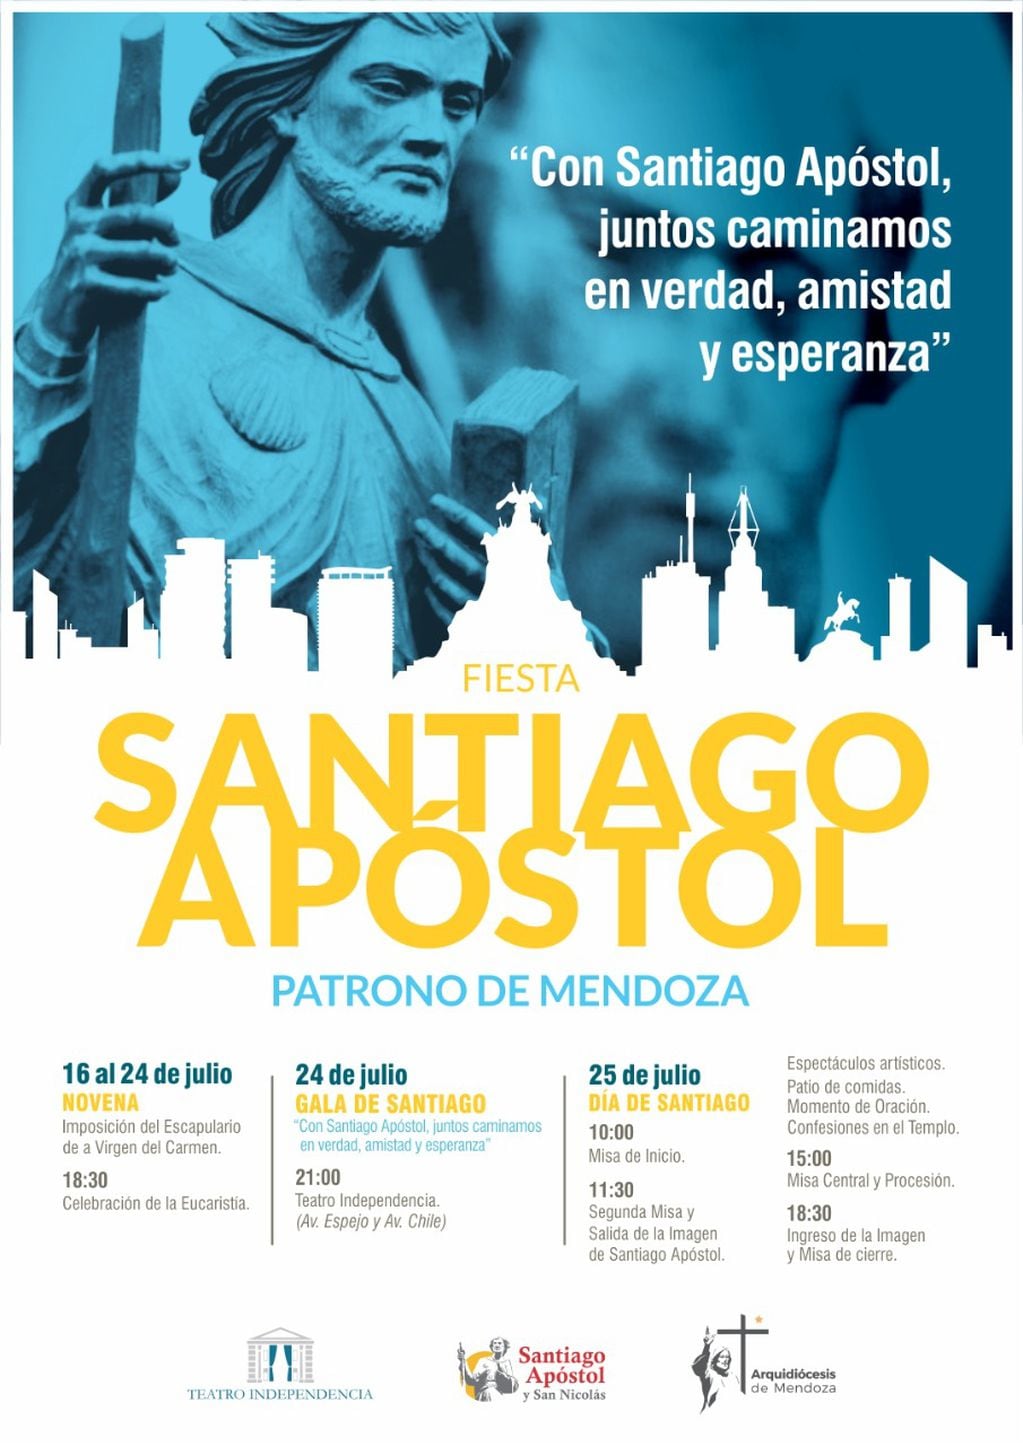 Las actividades en honor al Patrono Santiago y la historia del apóstol “de los temblores”.